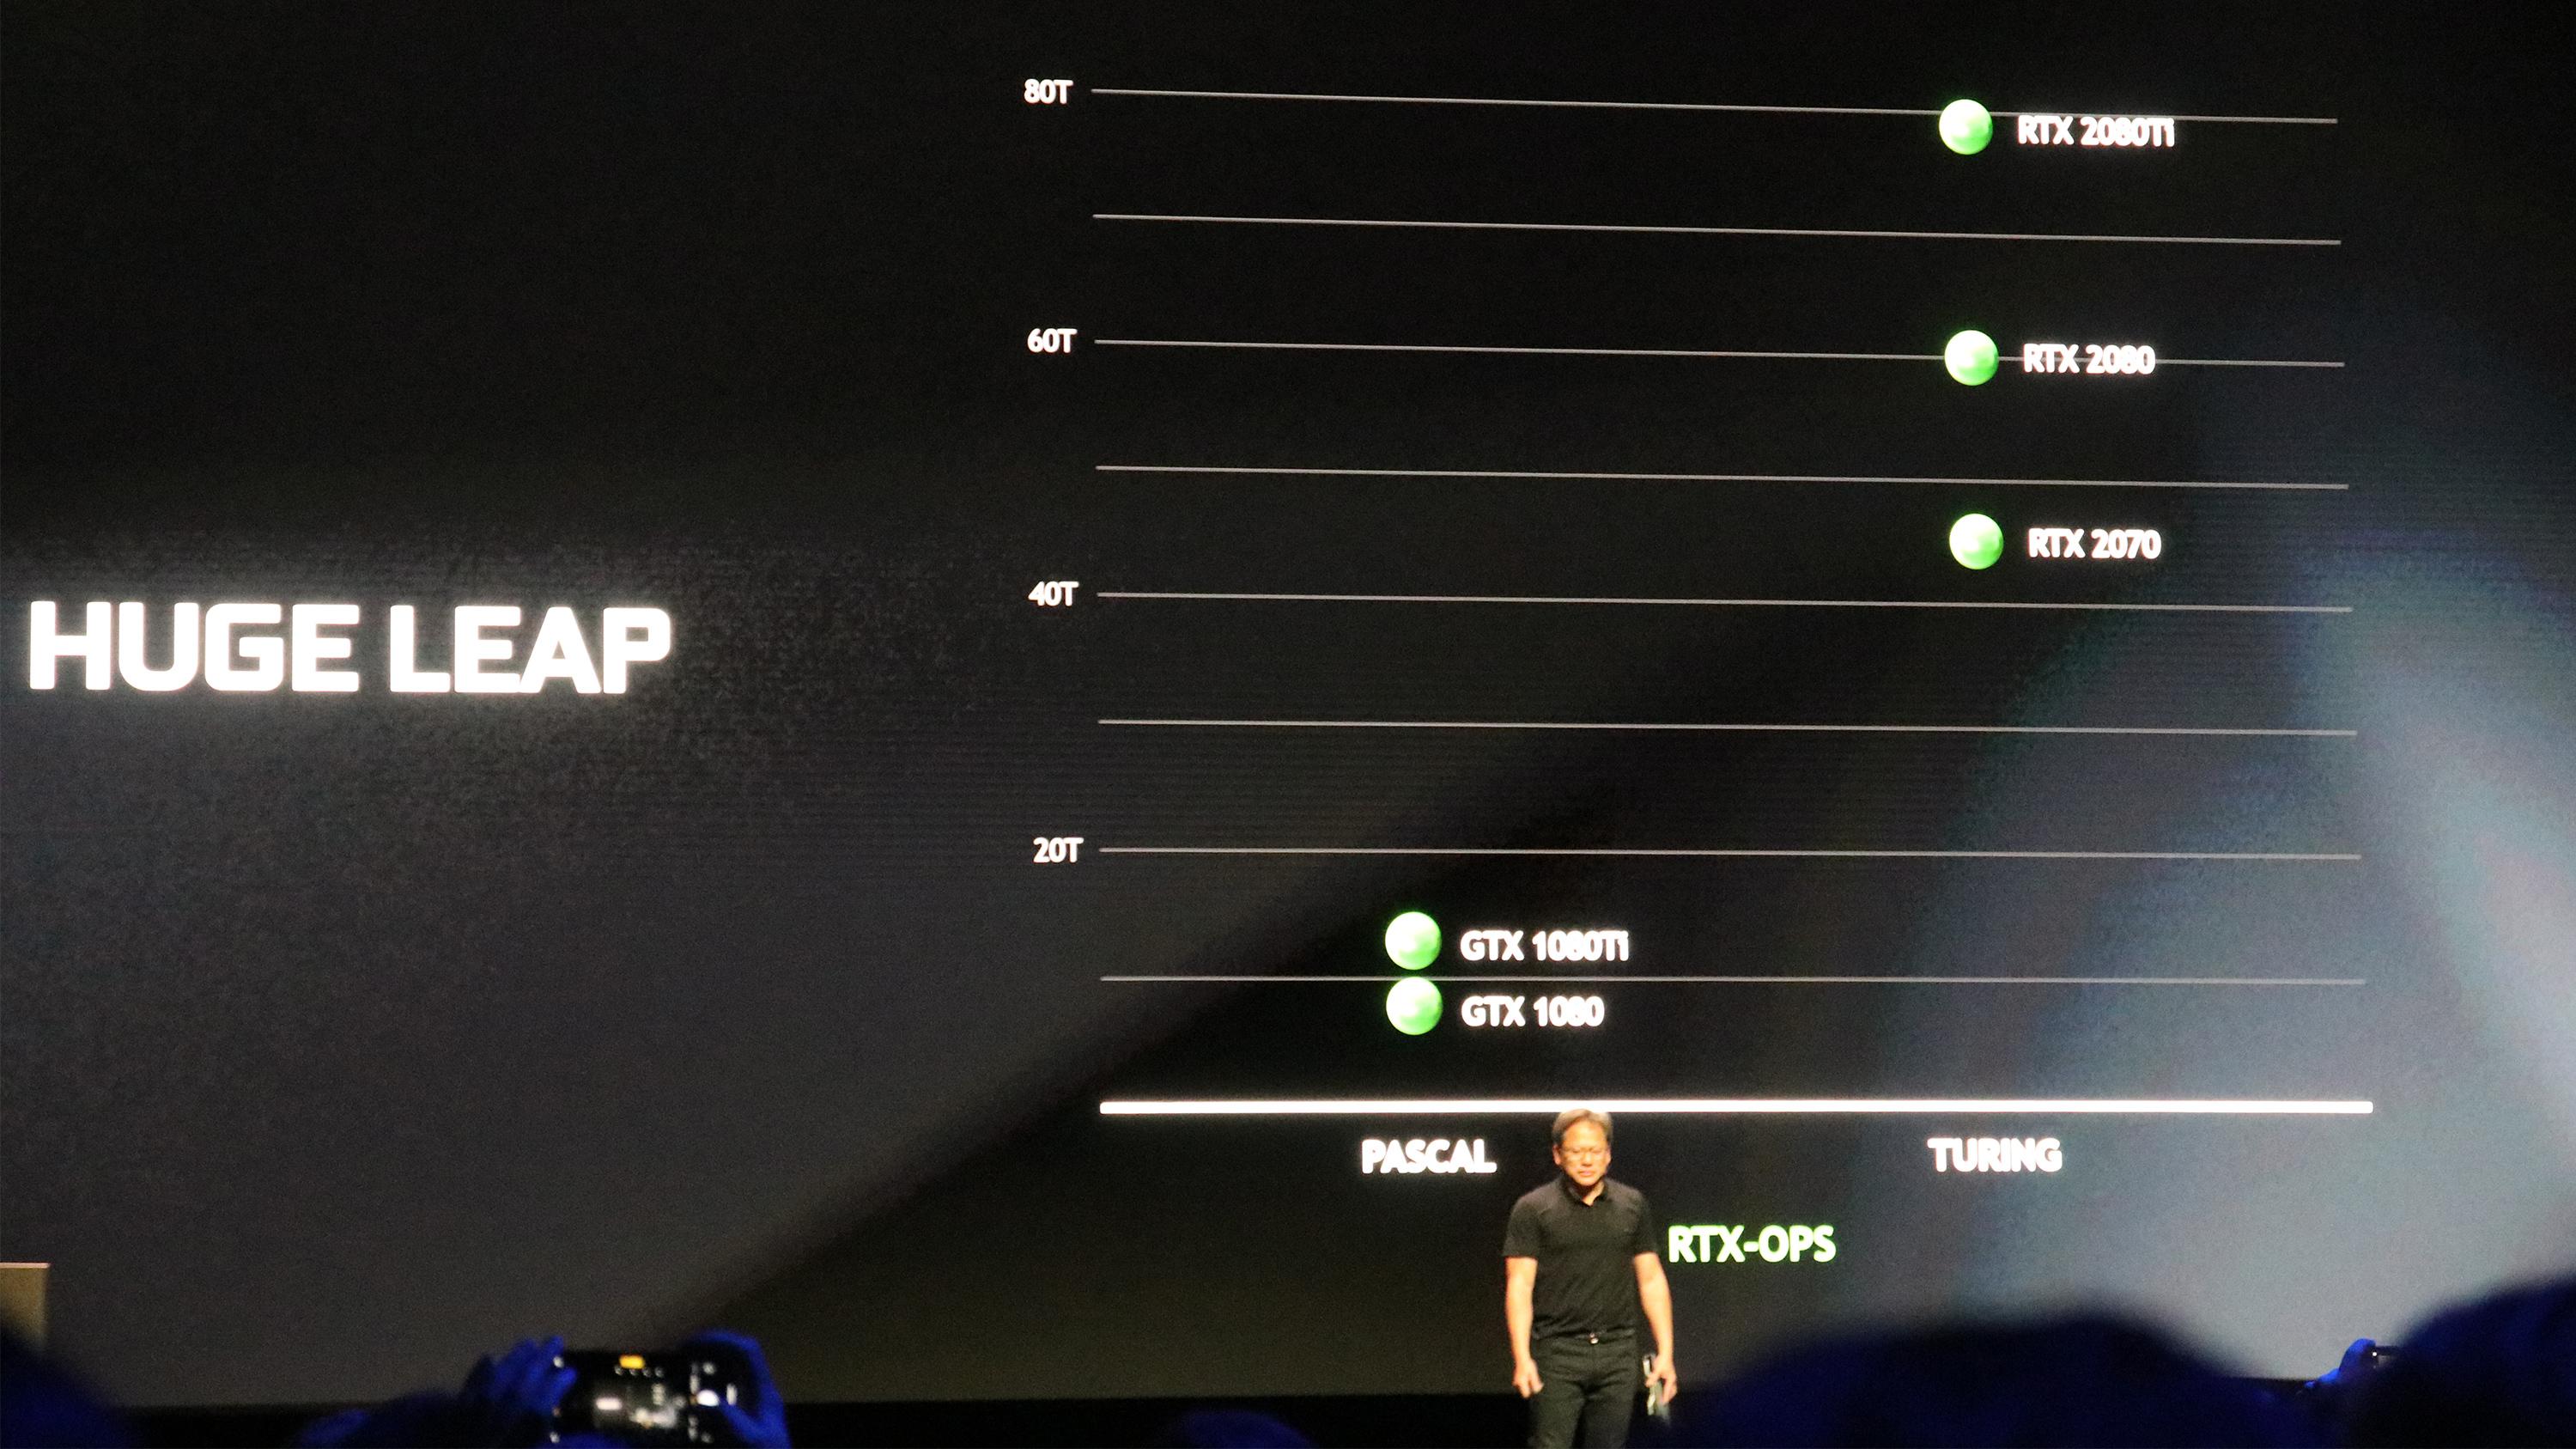 Nvidia presenterte en ny måte å sammenligne ytelse på. Den får i alle fall den nye serien til å se svært kraftig ut.